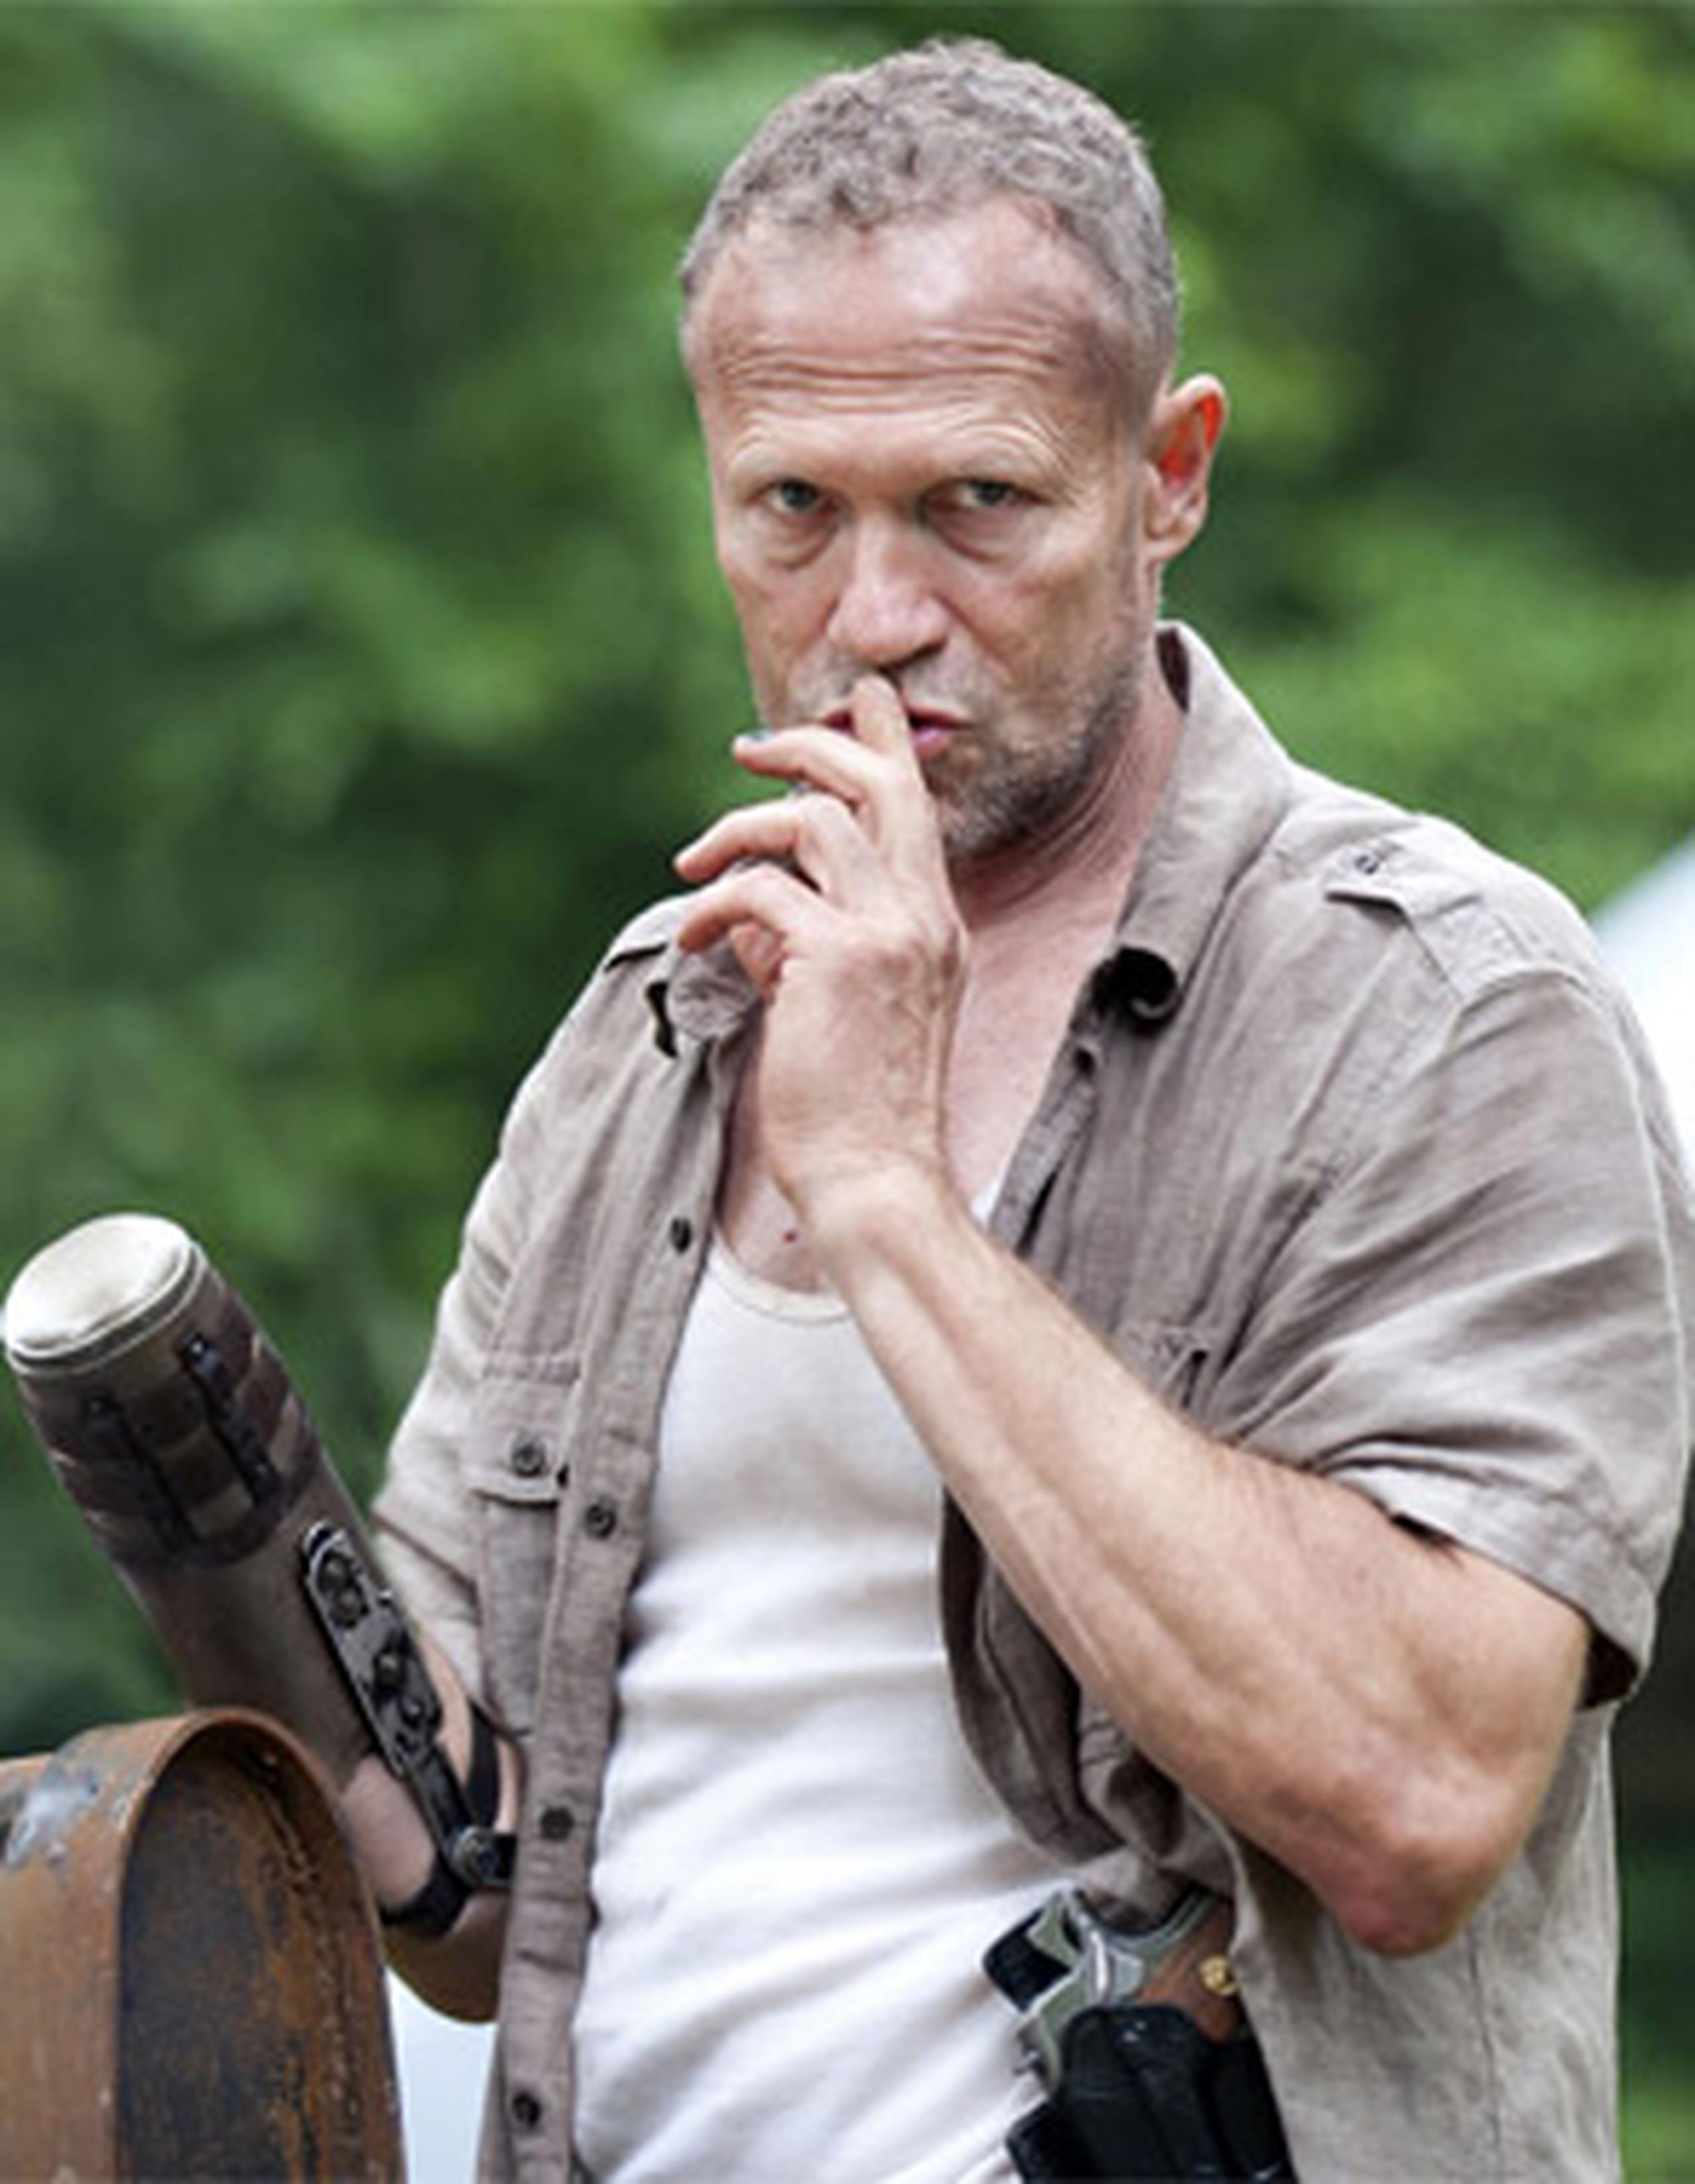 En “The Walking Dead”, el personaje que caracteriza Michael Rooker, es el hermano mayor de “Daryl Dixon” y uno de los sobrevivientes del grupo de Atlanta ante la amenazante proliferación de zombies en Estados Unidos. (Archivo)